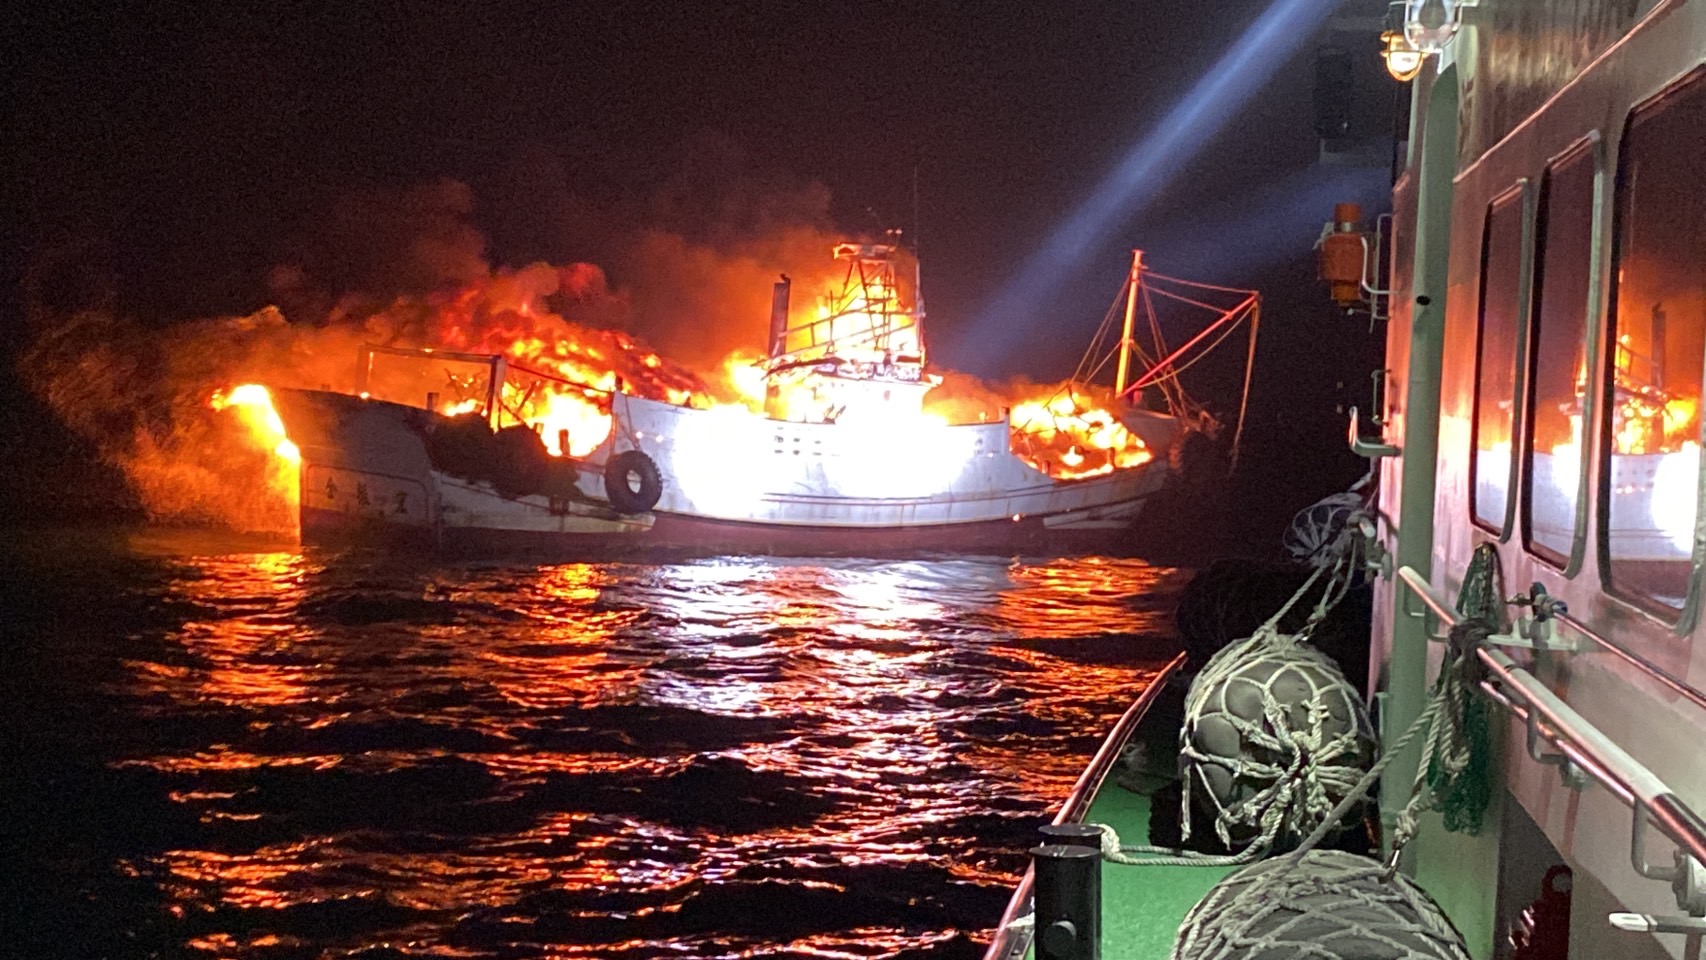 澎湖暗夜火燒船五員跳海求生  海巡艇立即馳援救難及滅火